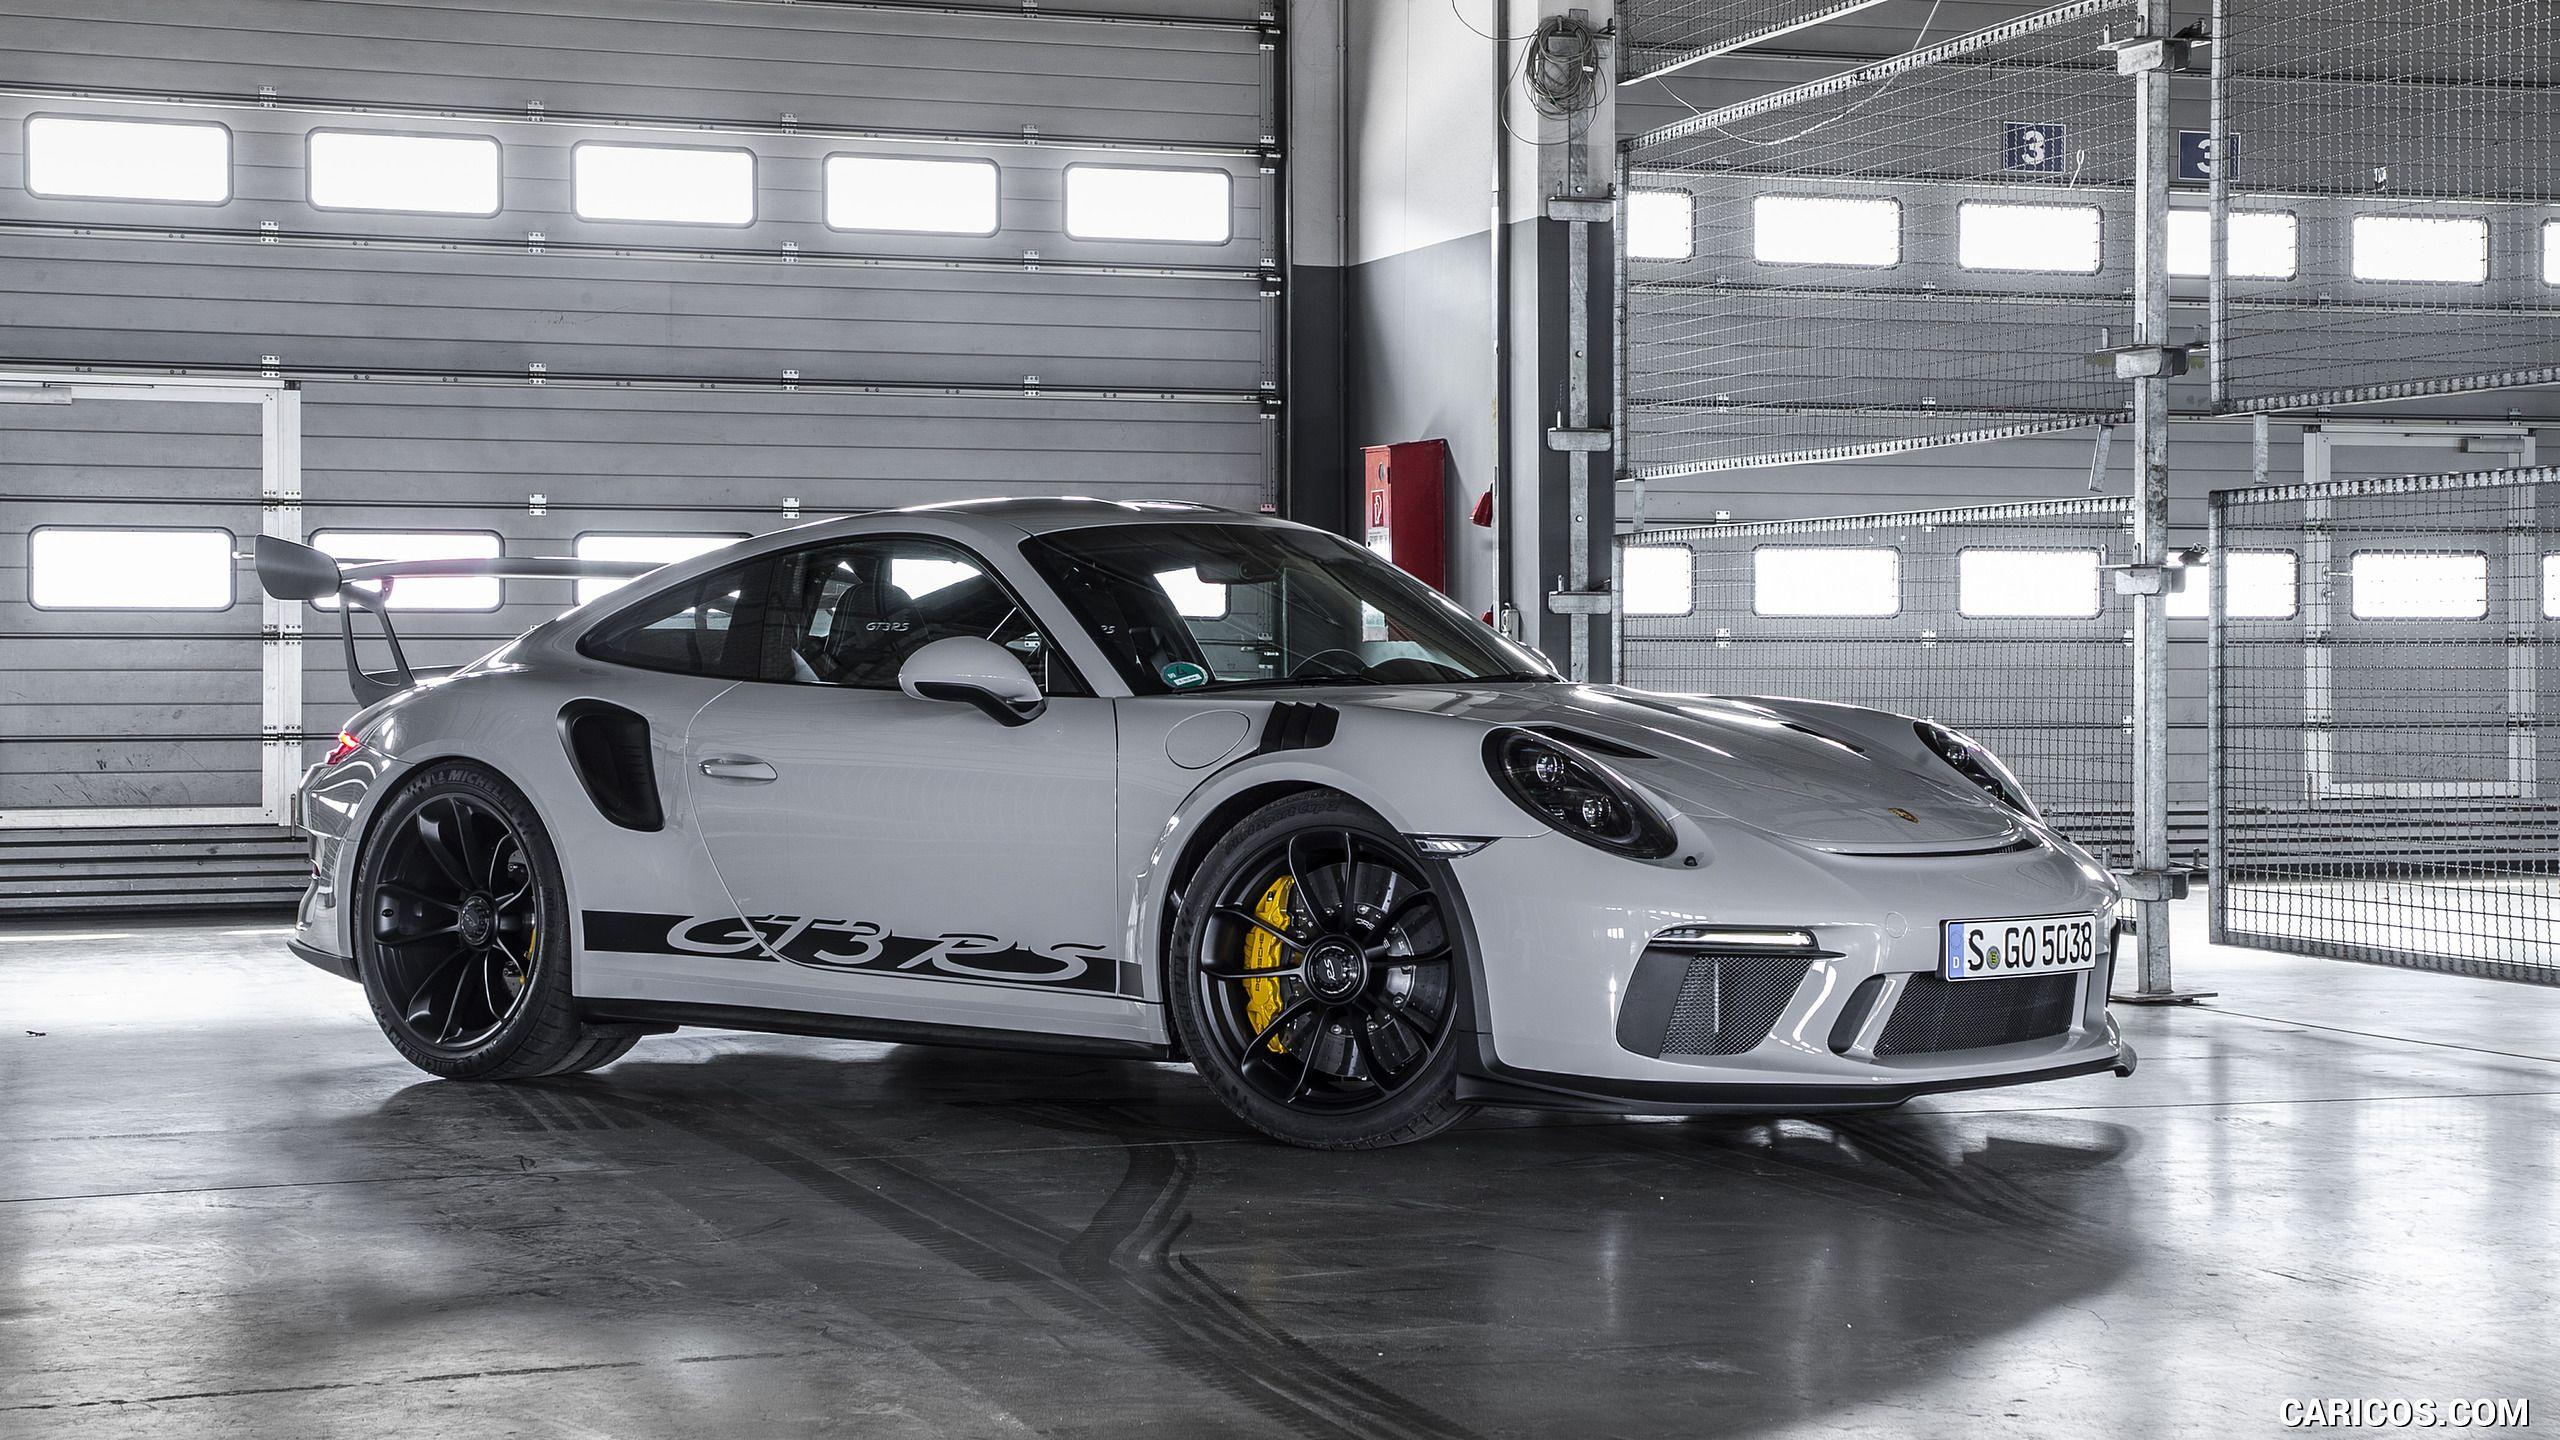  Porsche Gt3 Rs Hintergrundbild 2560x1440. Porsche GT3RS Wallpaper